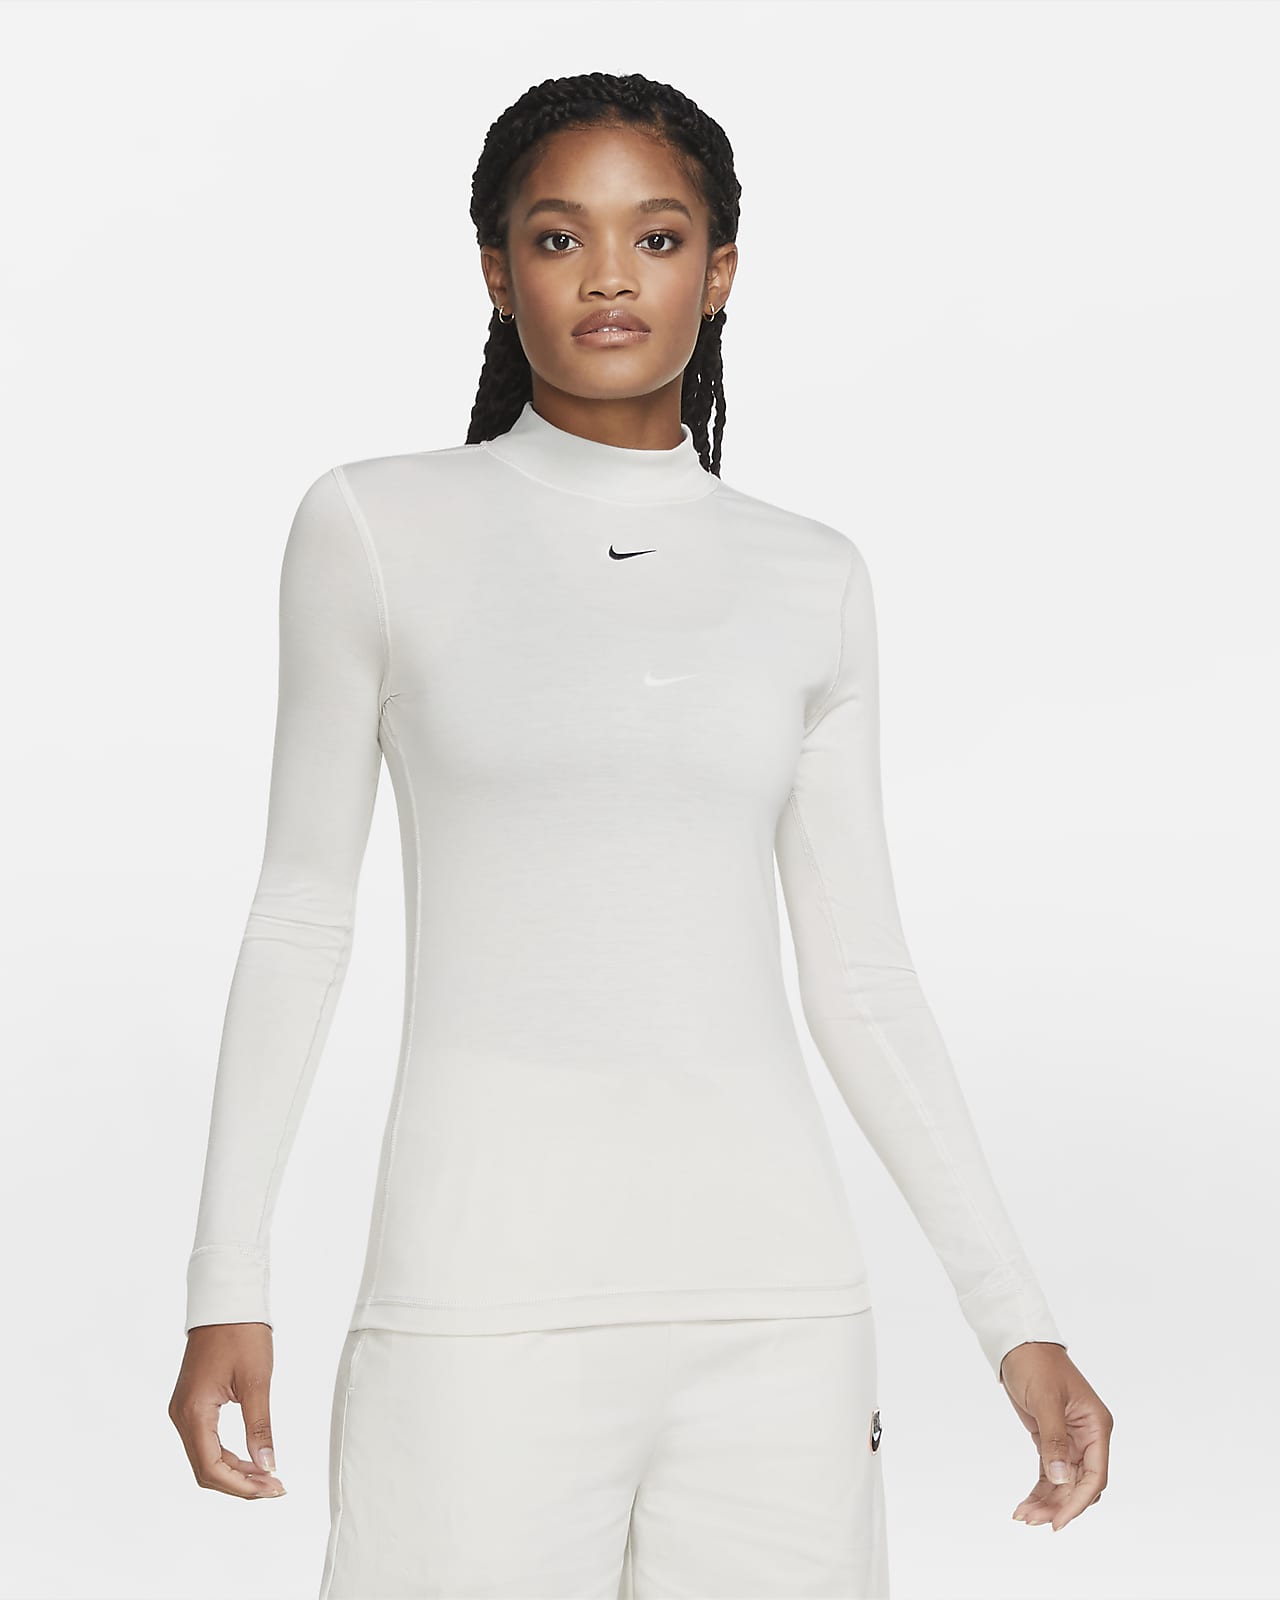 Nike Sportswear Women's Long-Sleeve Mock-Neck Top. Nike IL